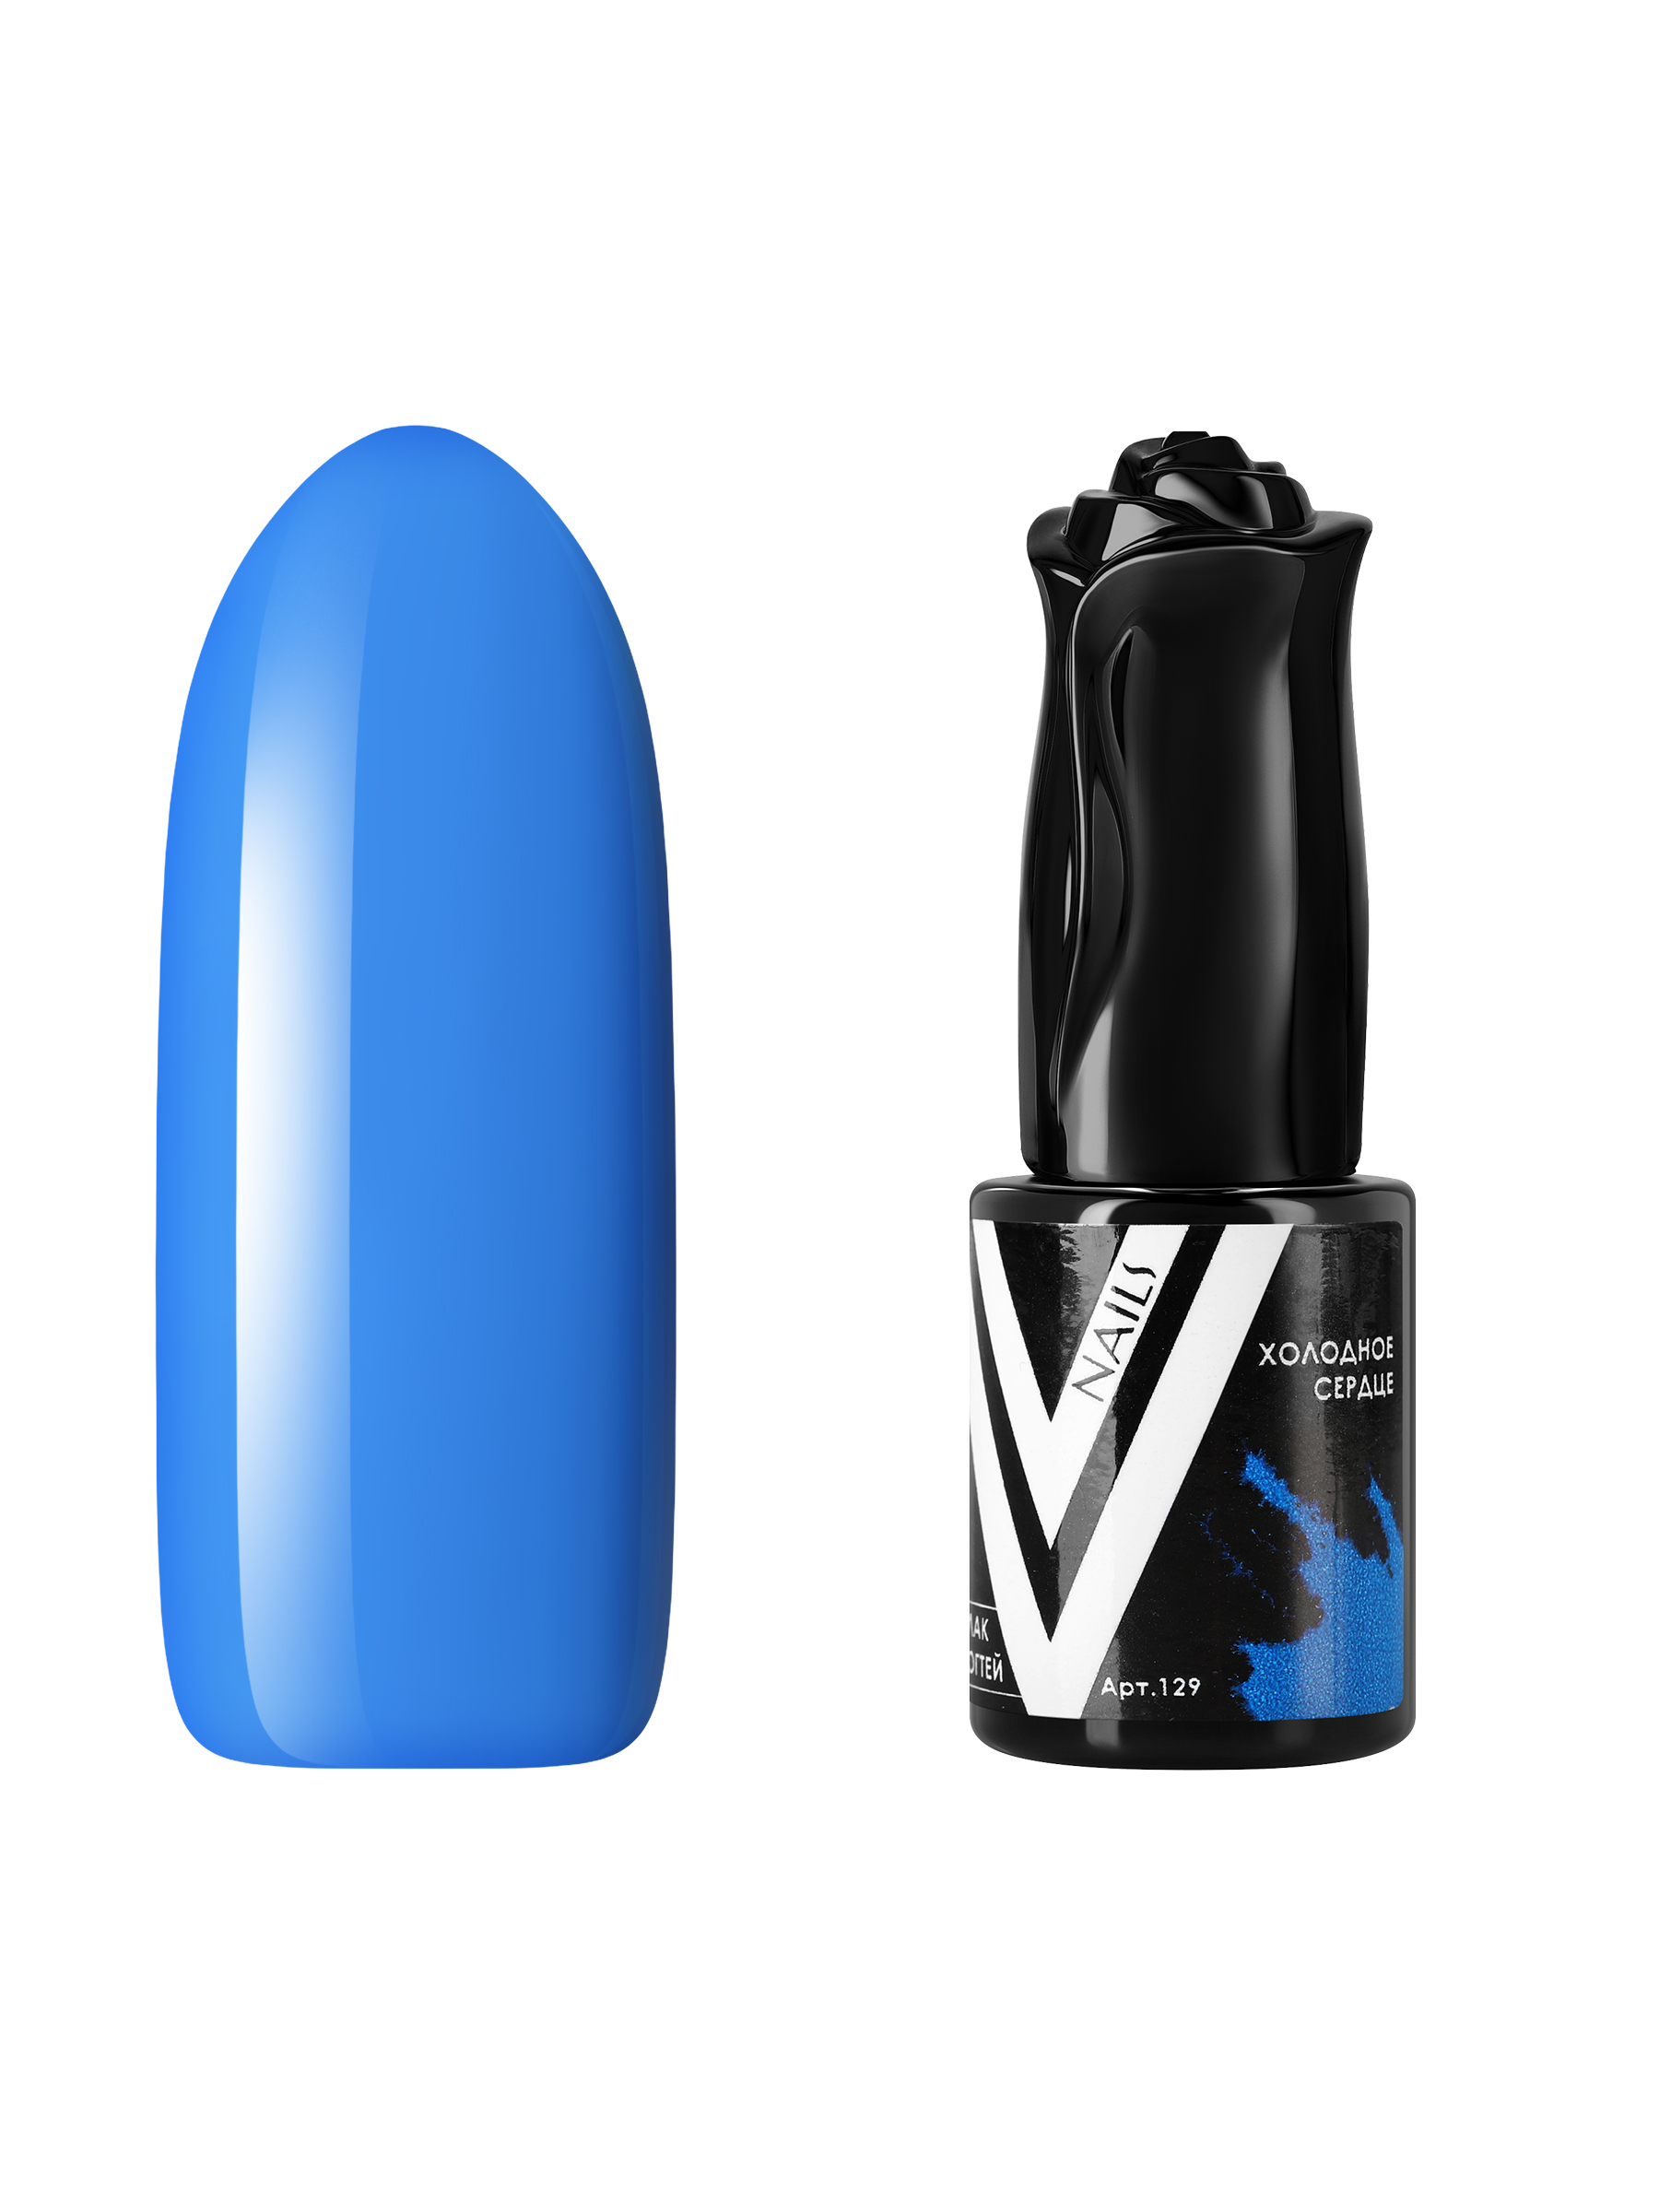 Гель-лак для ногтей Vogue Nails плотный самовыравнивающийся, яркий синий, 10 мл холодное сердце рг 1704 раскраска с глиттером